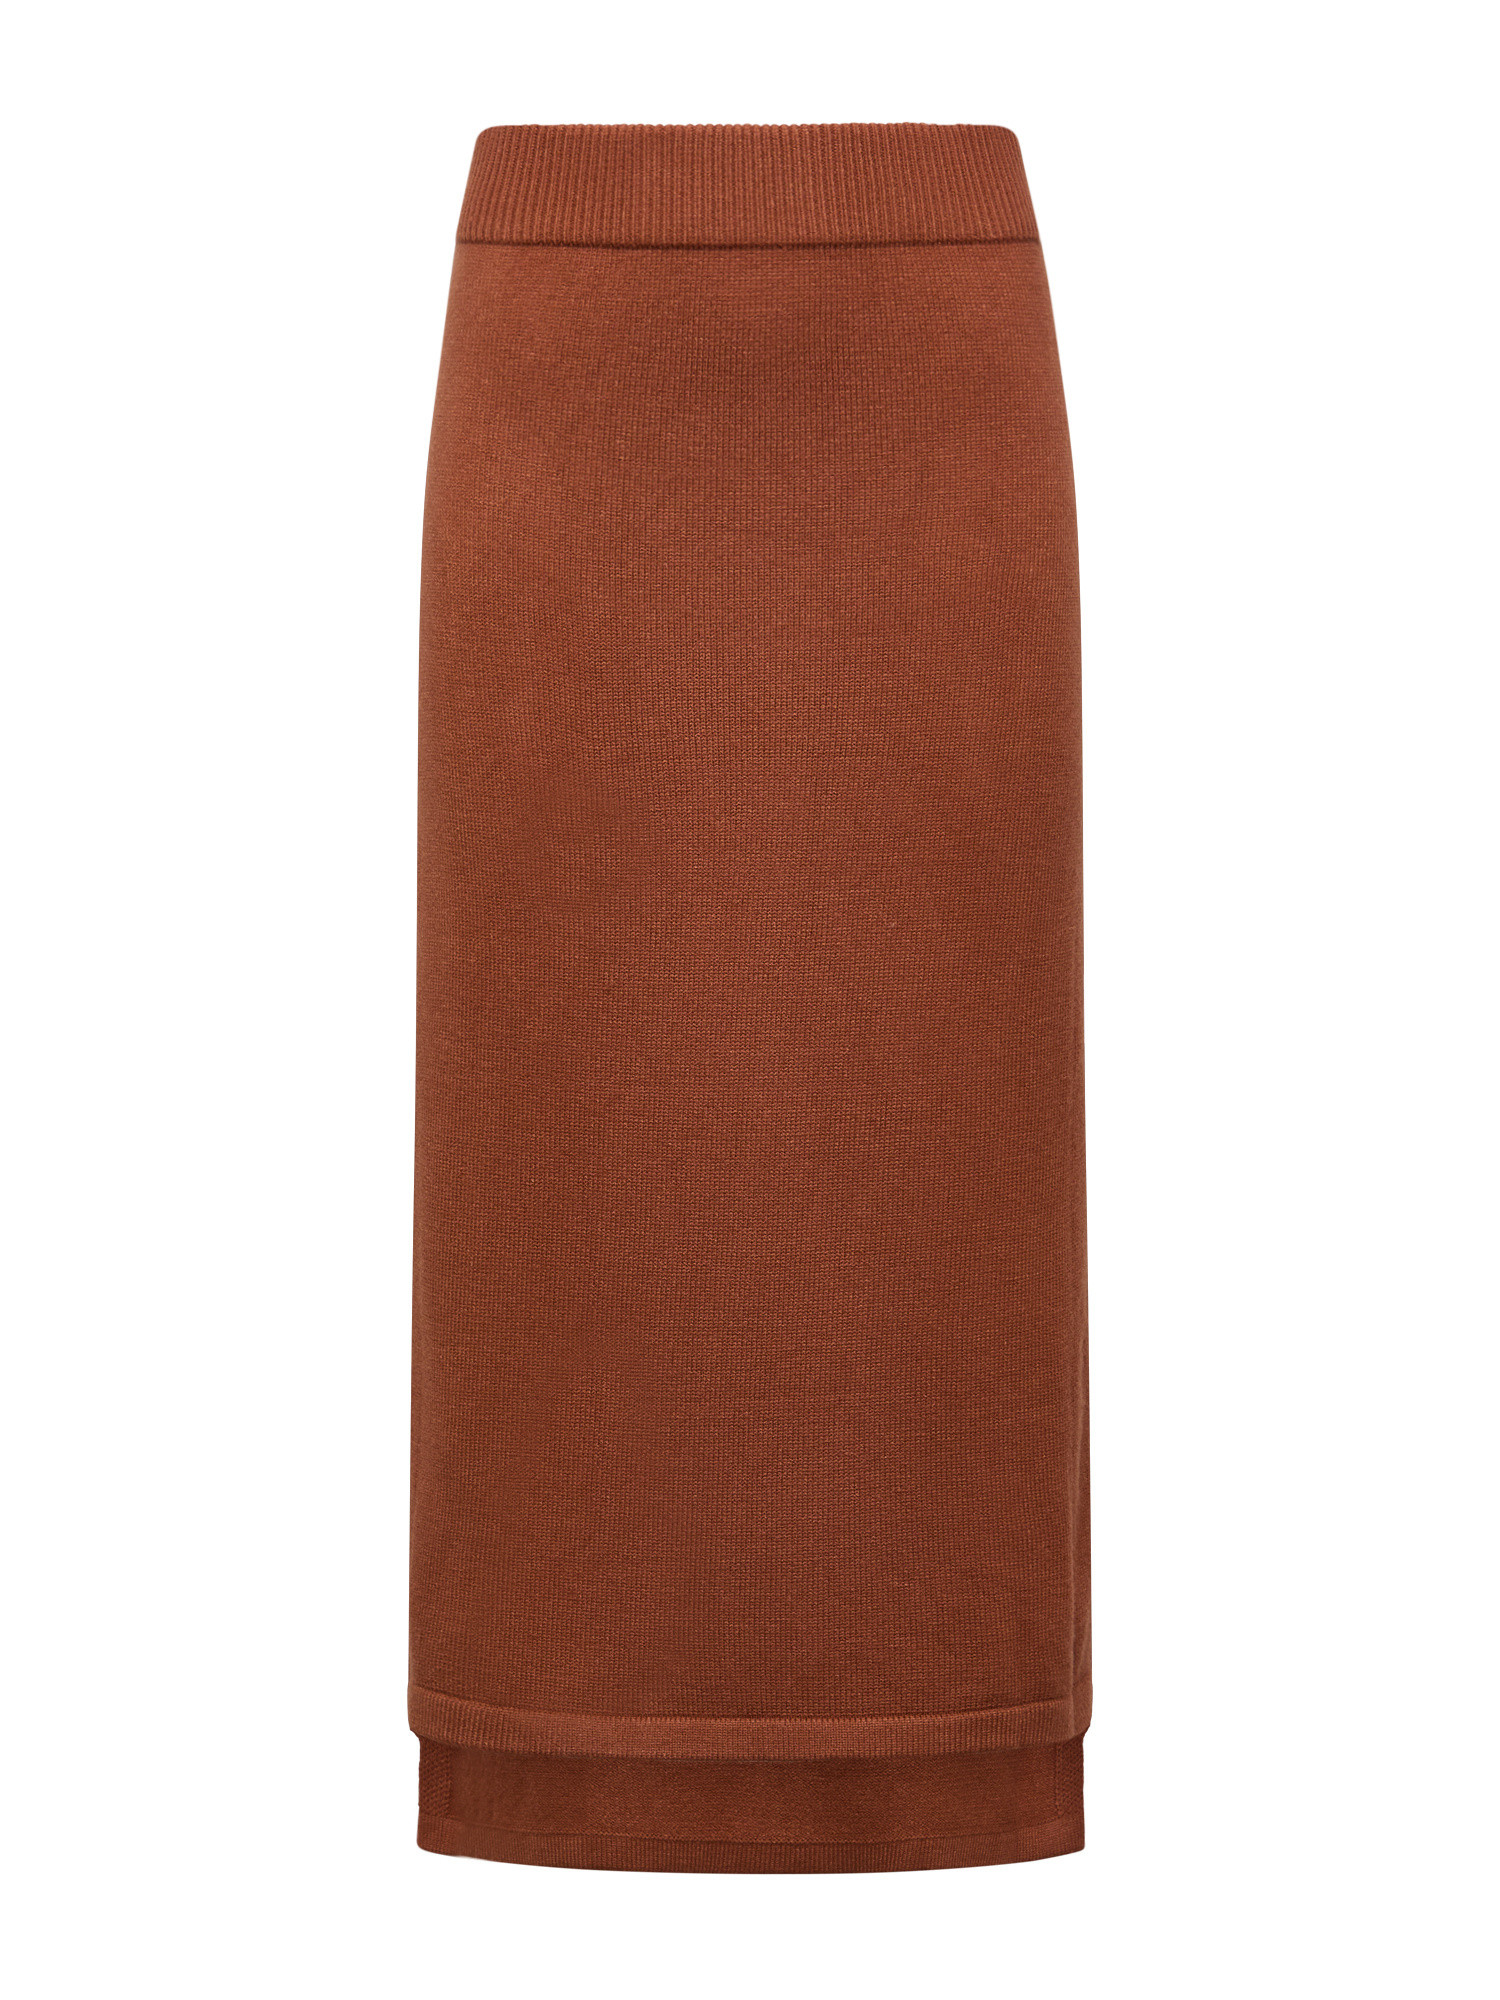 Koan Collection Трикотажная юбка миди, коричневый